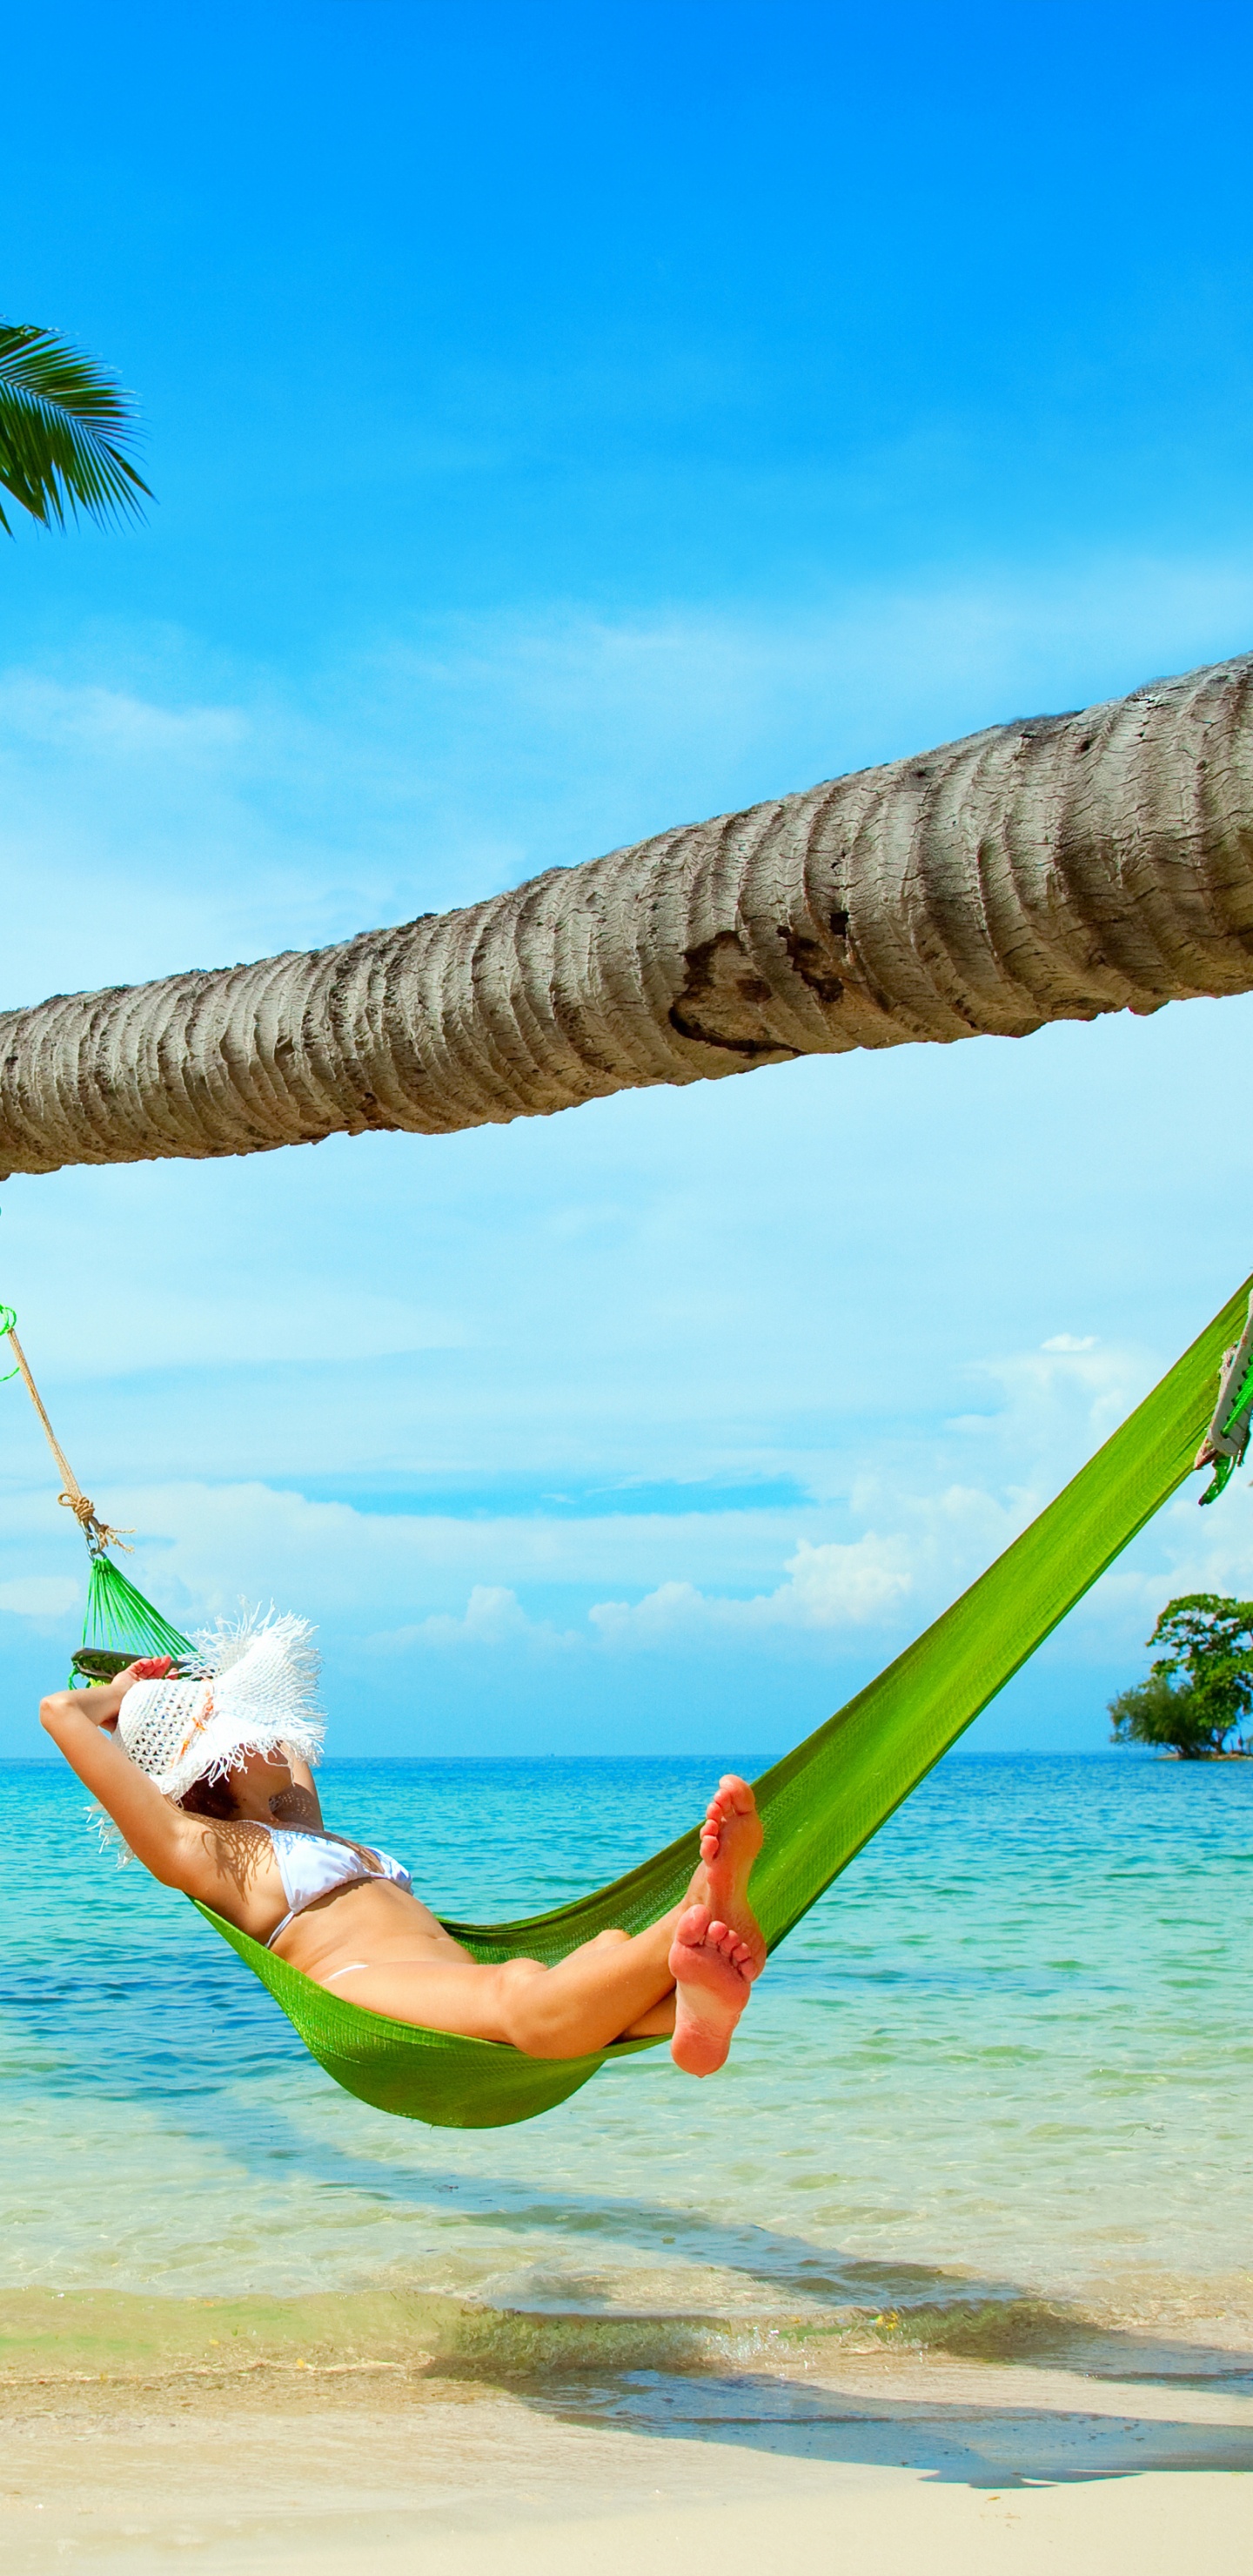 吊床, 大海, 热带地区, 度假, 加勒比 壁纸 1440x2960 允许